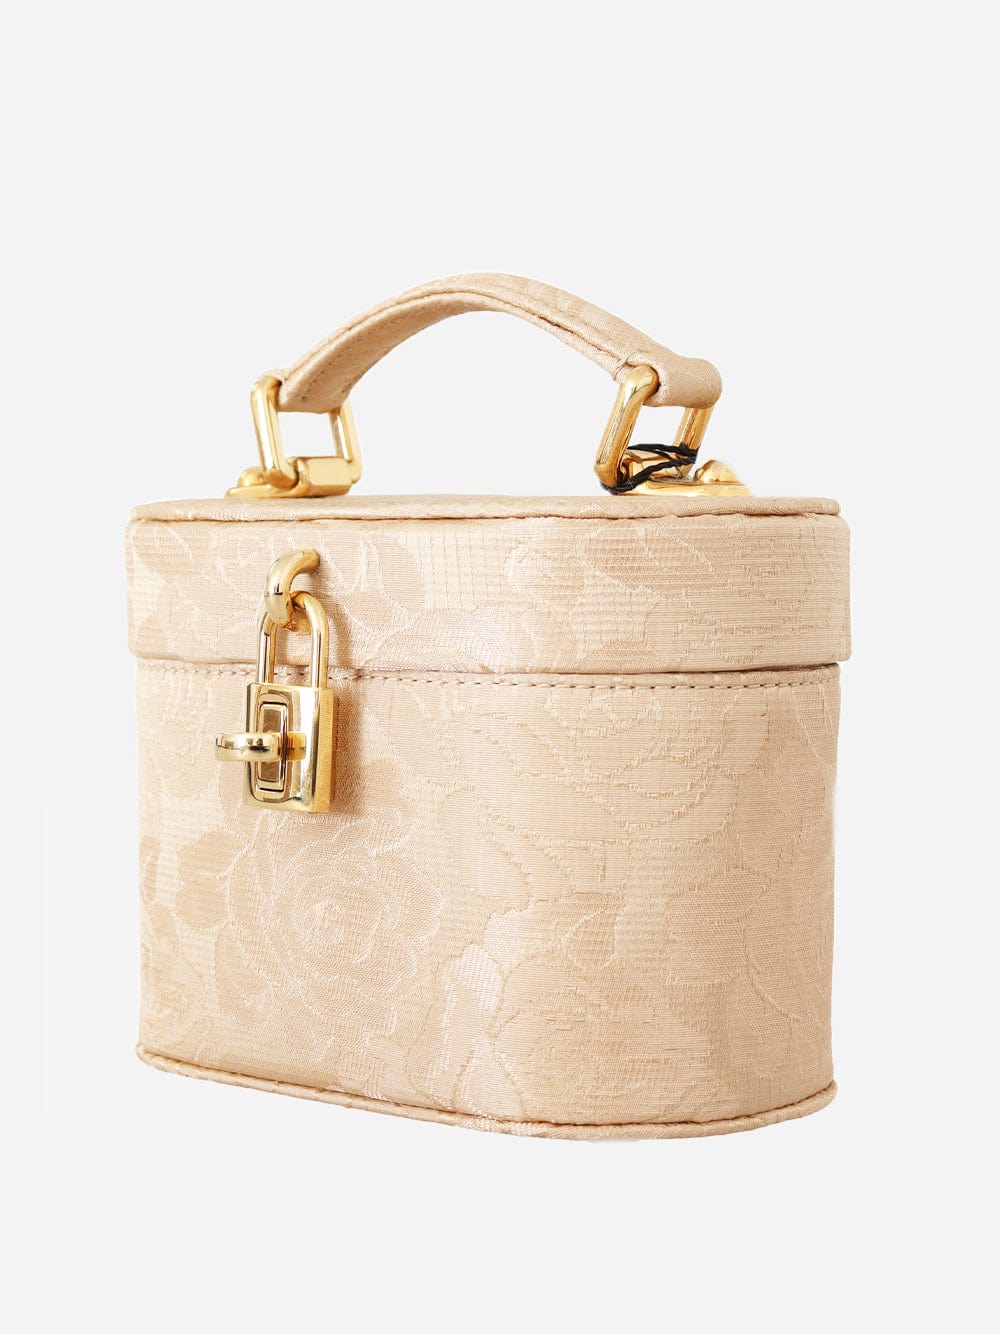 Dolce & Gabbana Alta Moda Bucket Bag